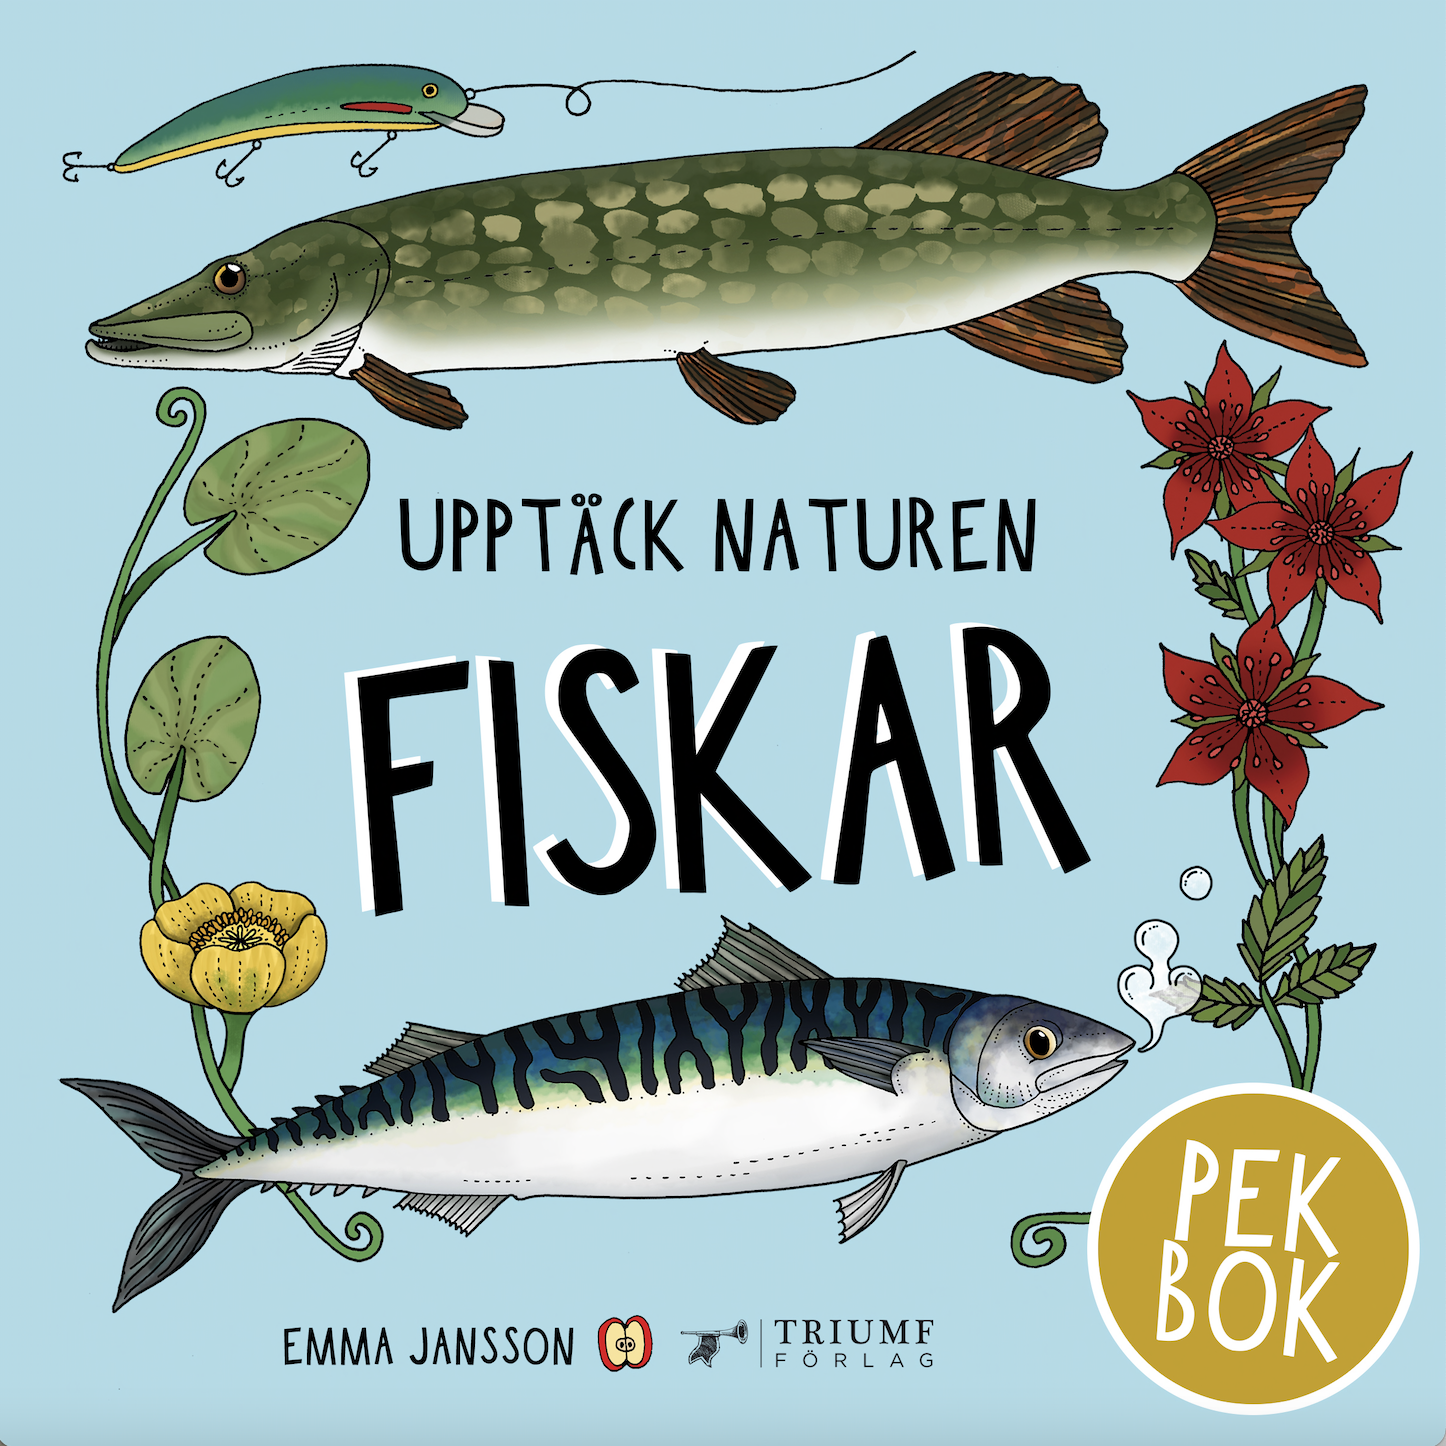 "Upptäck naturen fiskar - Pekbok" av Emma Jansson